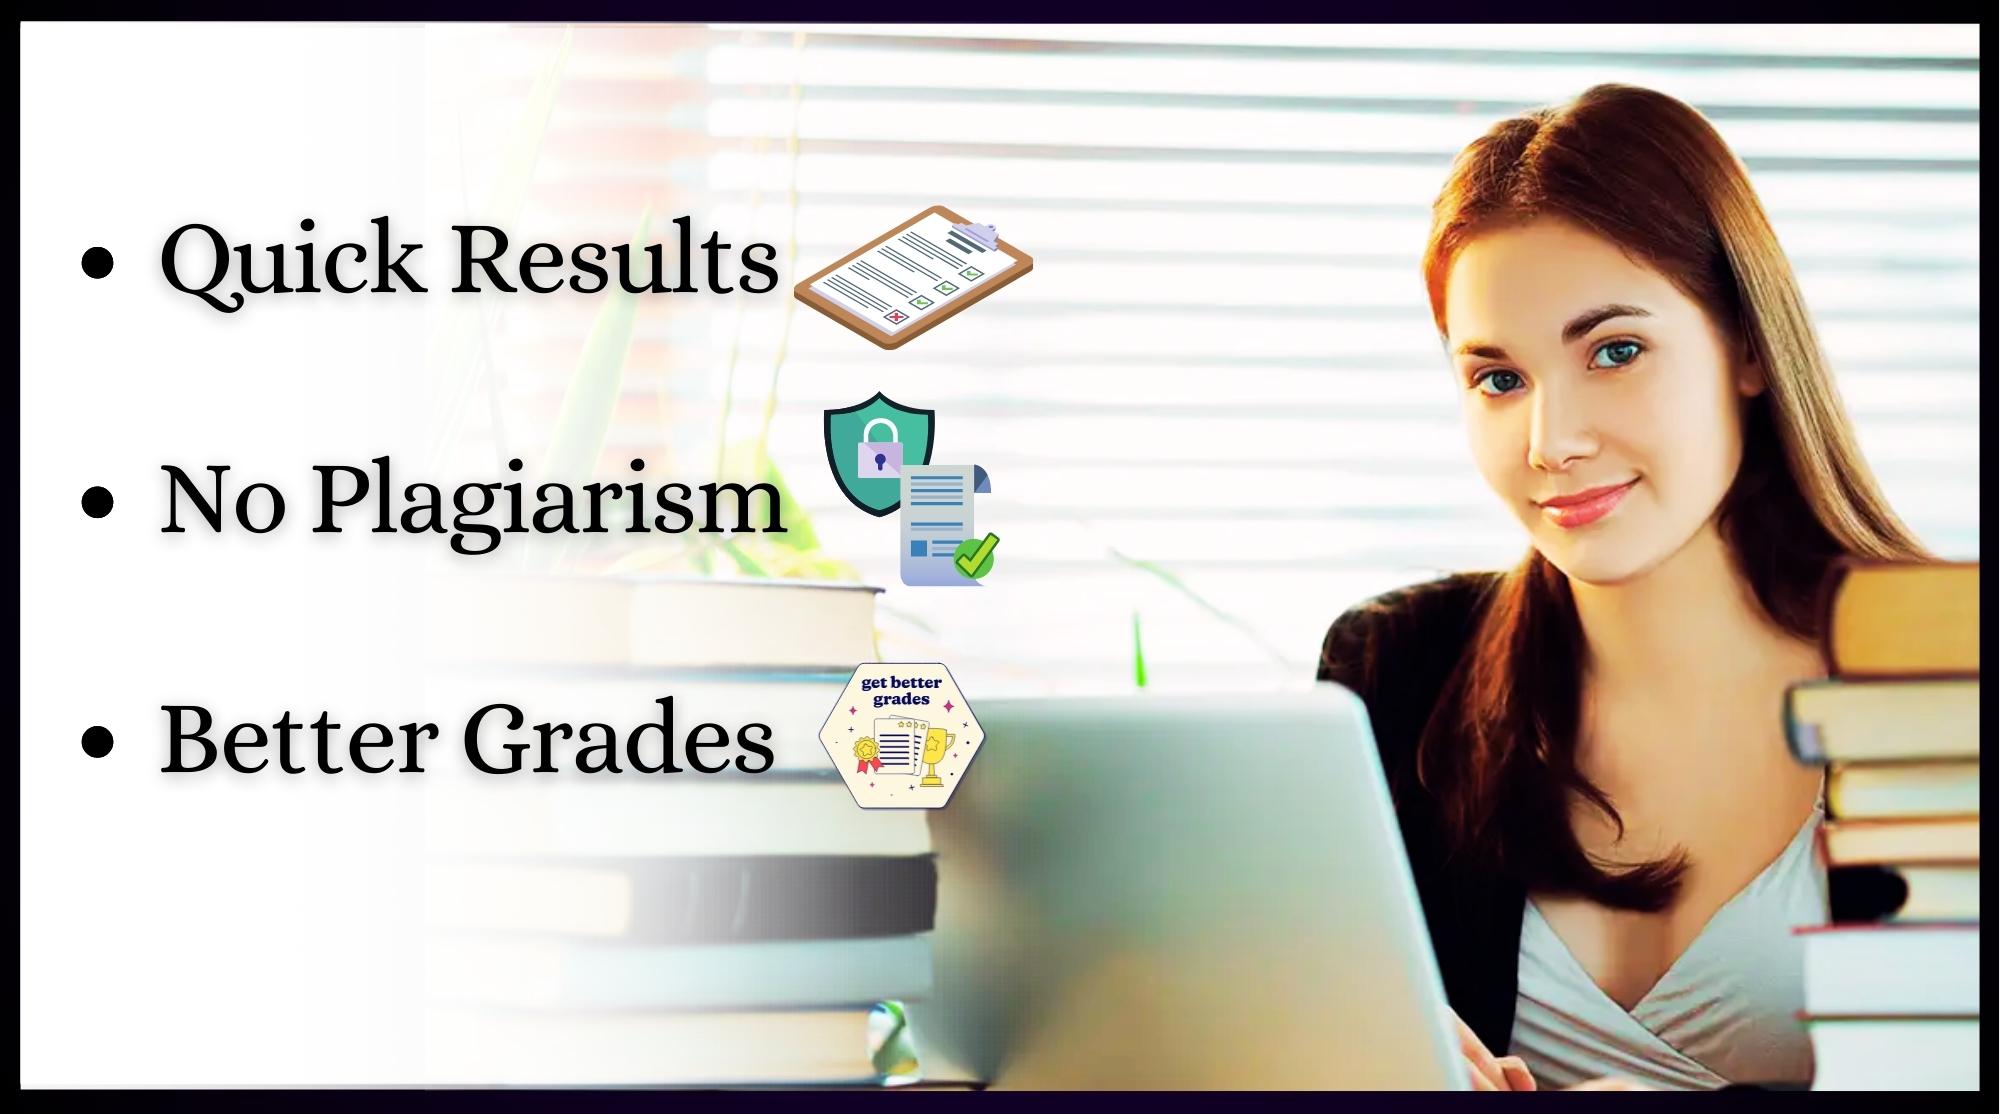 SITXINV002 Assignment Help at BEWS - Quick Results - No Plagiarism - Better Grades